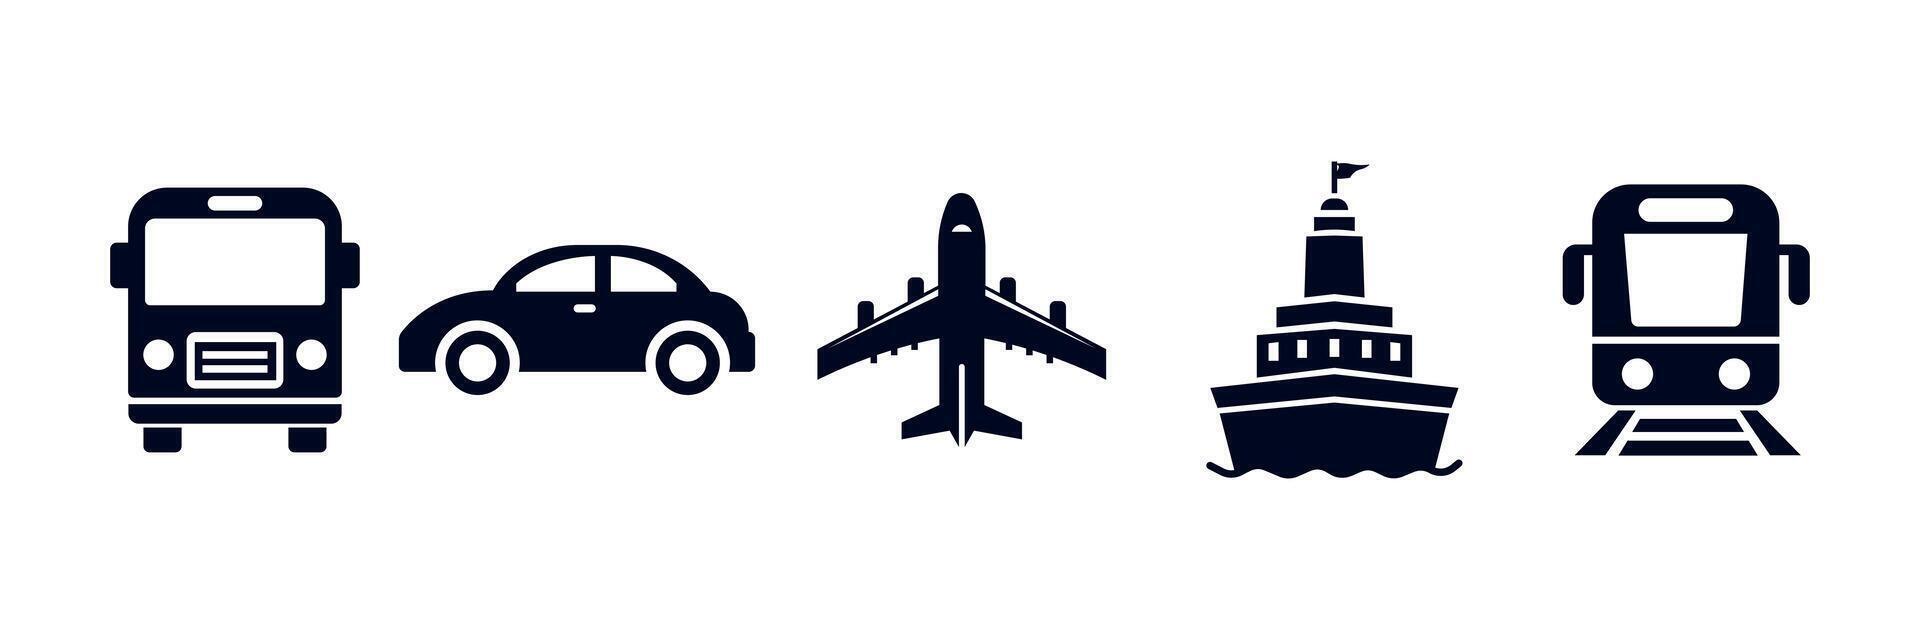 Öffentlichkeit Transport Satz. Transport Symbole. Öffentlichkeit Bus, Automobil, Ebene, Schiff oder Fähre, Zug. Vektor Illustration